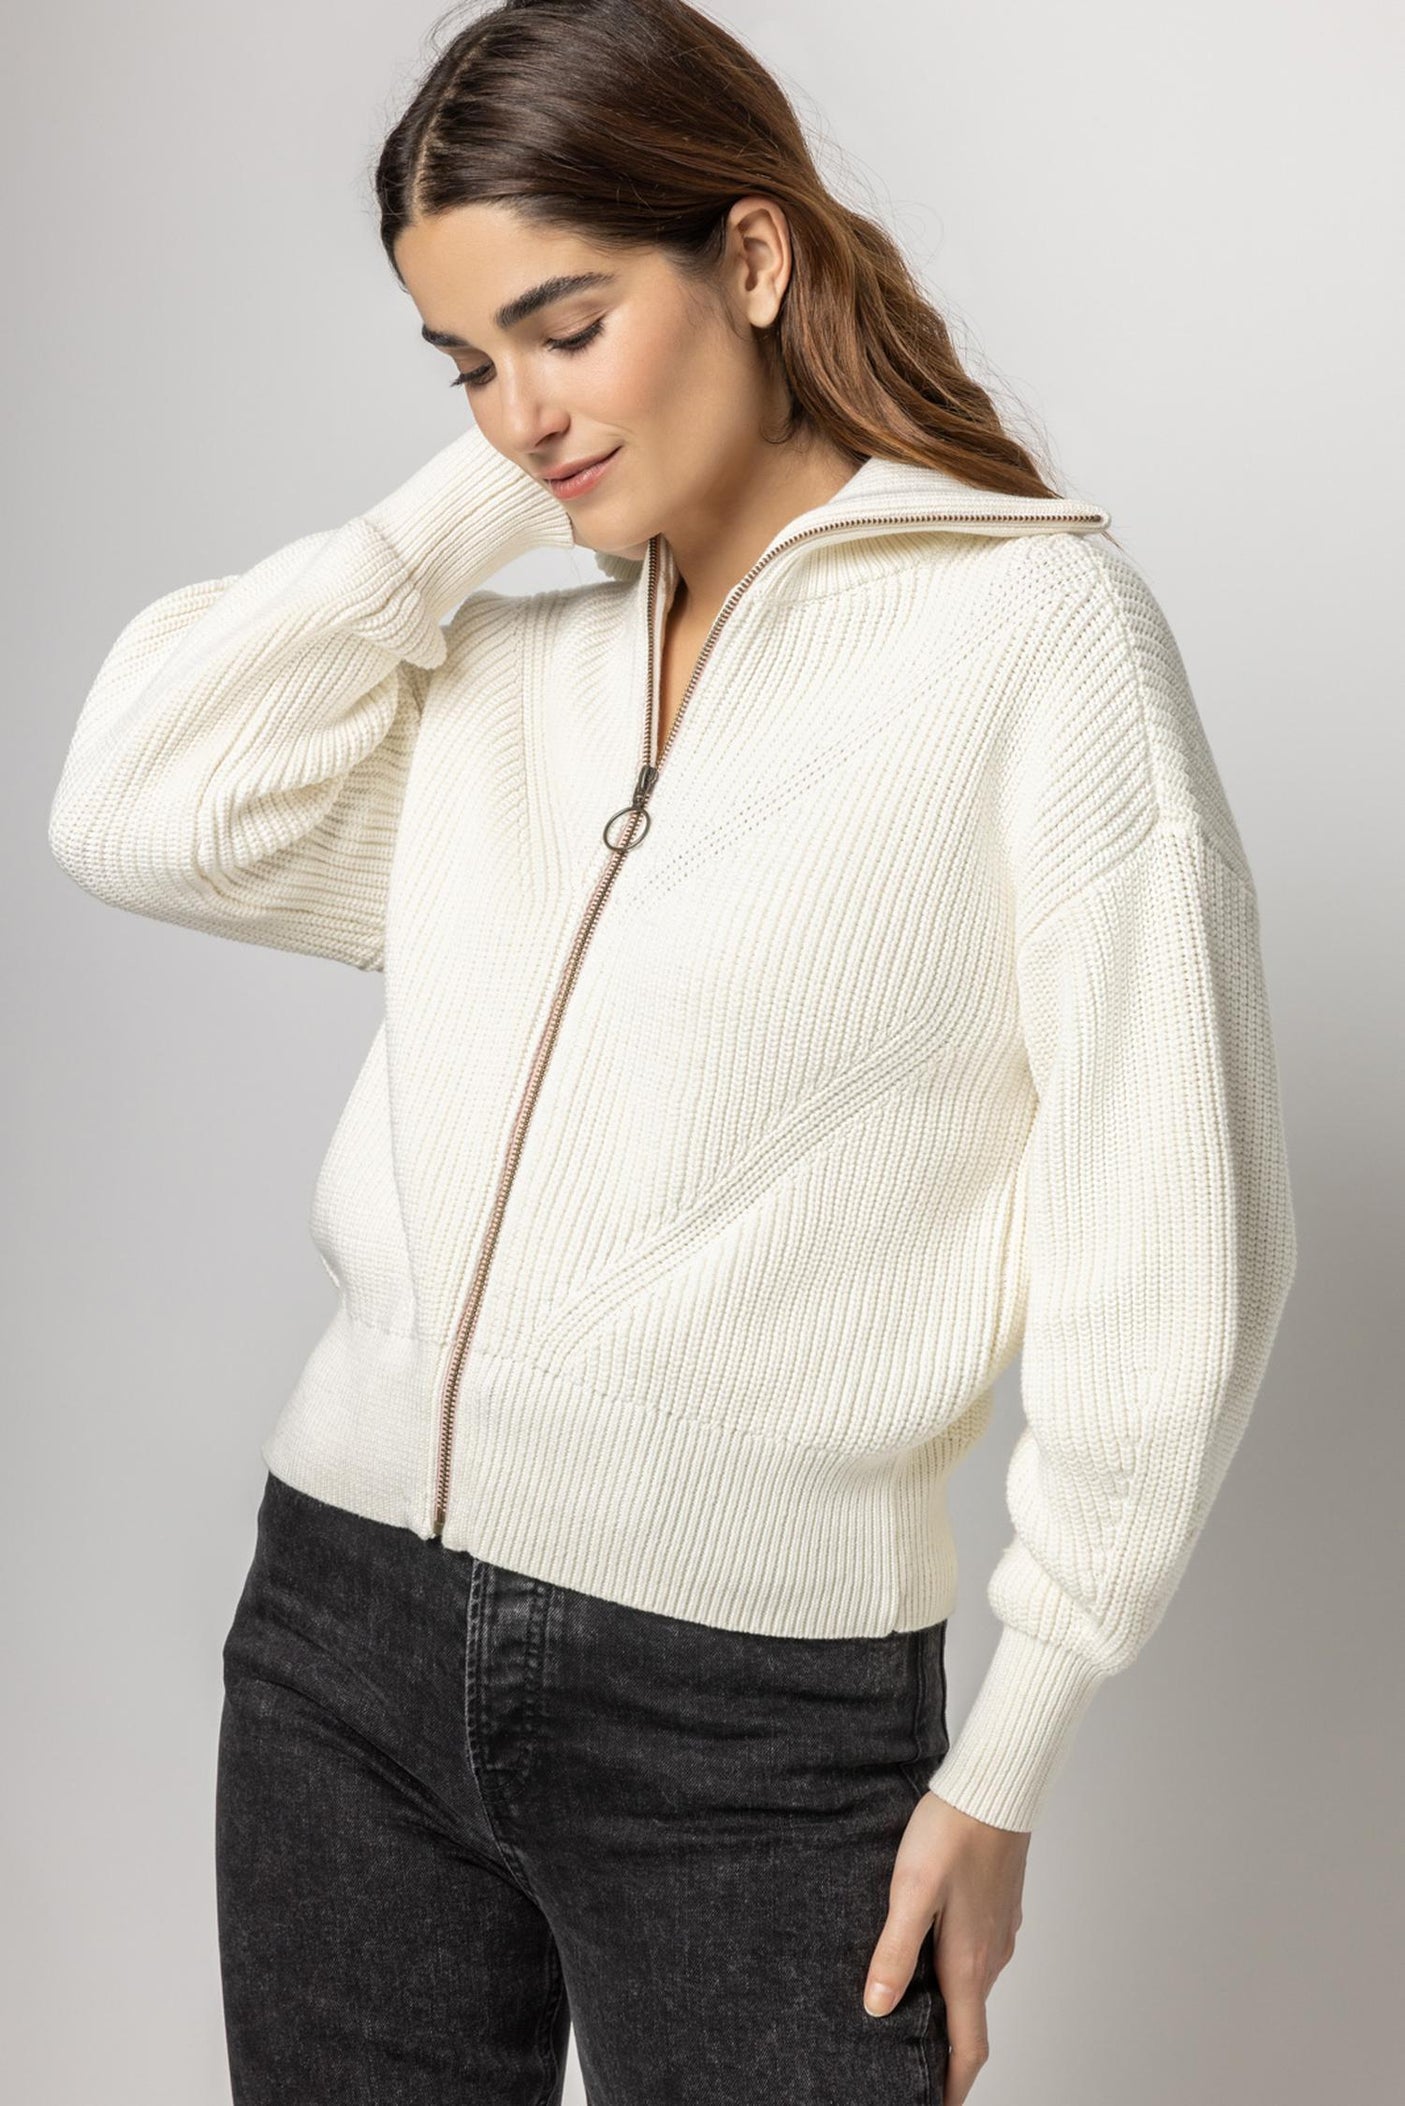 Women's Jackets & Sweaters